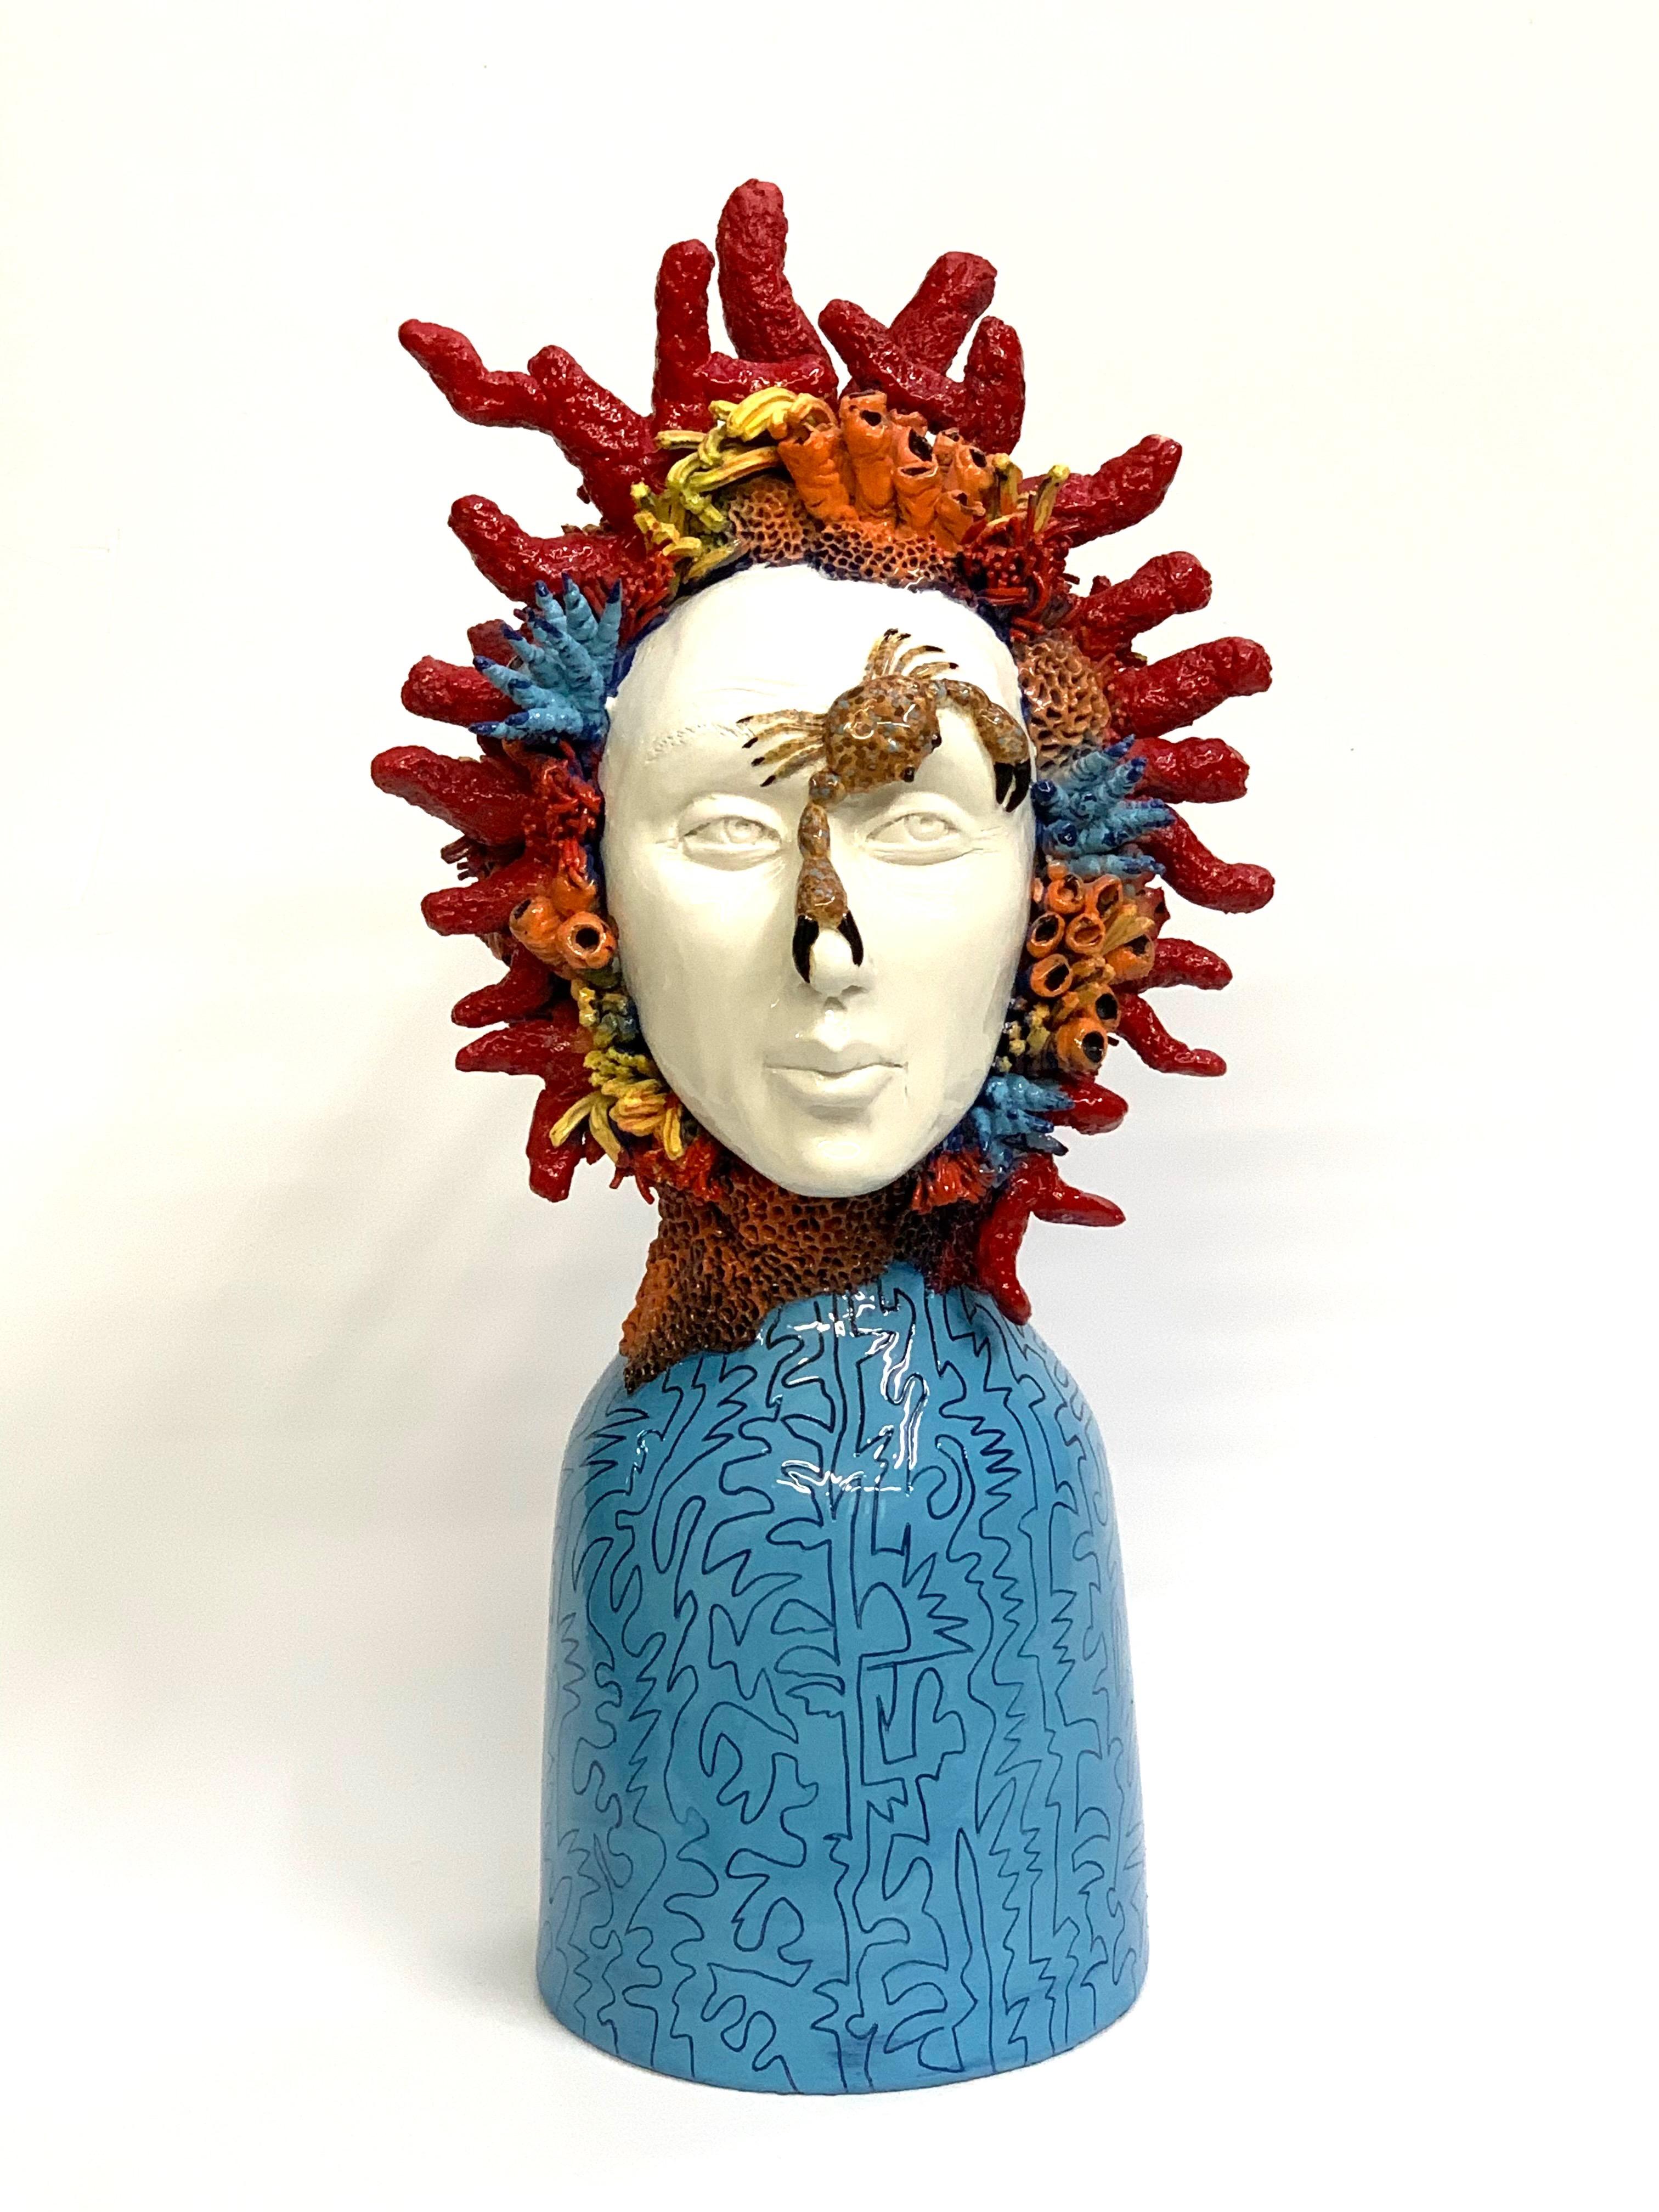 Das Stück ist eine einzigartige Darstellung eines Frauenkopfes auf moderne Weise.
Unser Designer fertigt diese Stücke vollständig von Hand an.
   